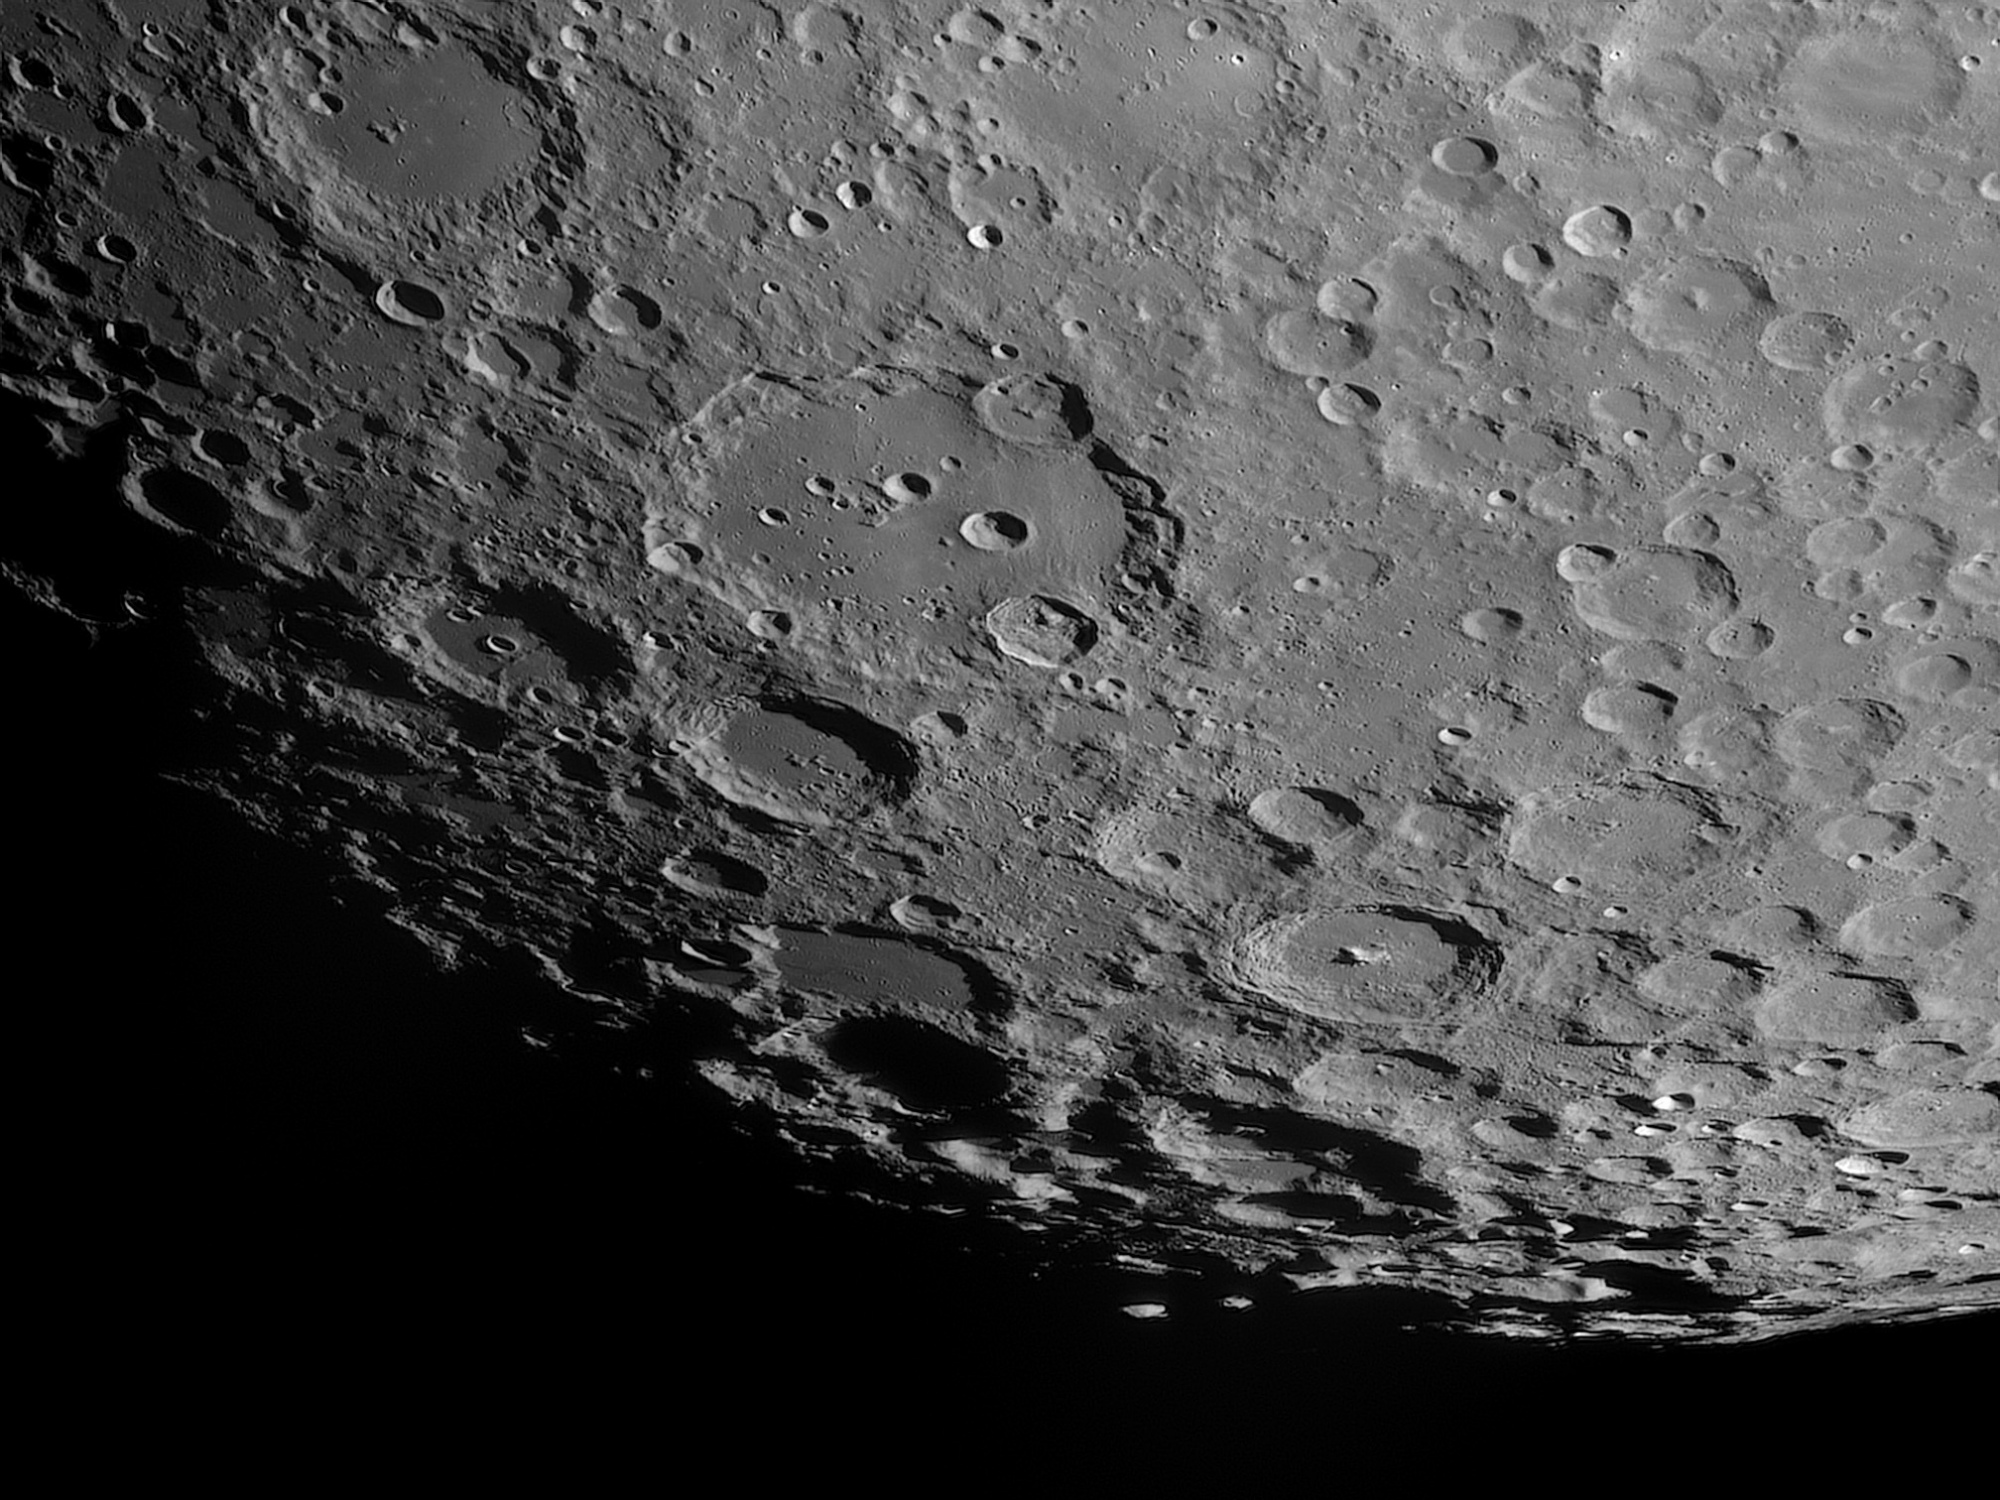 Lune-20230302_Clavius-ba-AS2024.thumb.jpg.13768bbf848d56f0c5c86083d6698352.jpg